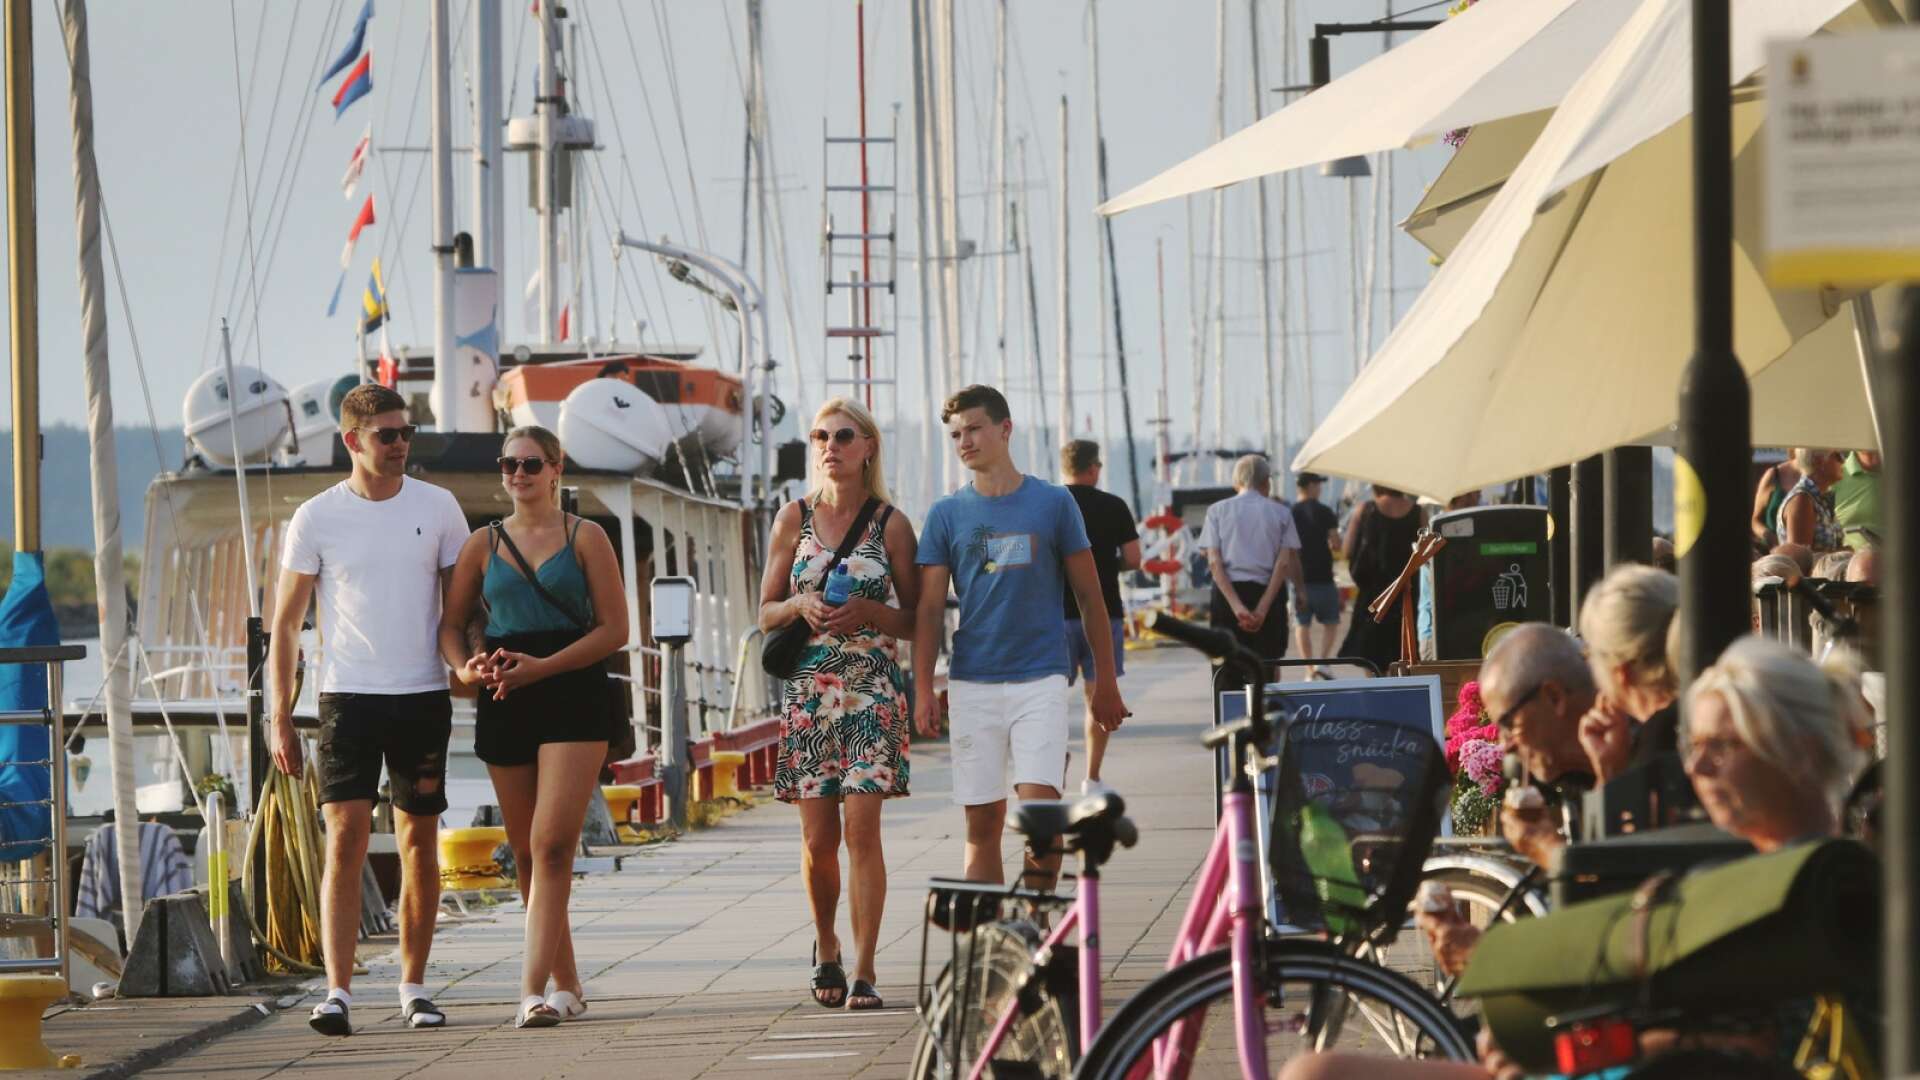 Hamnområdet i Mariestad blir i sommar platsen för en festival med tema ”vatten”. Aktiviteter planeras både till sjöss och på land.